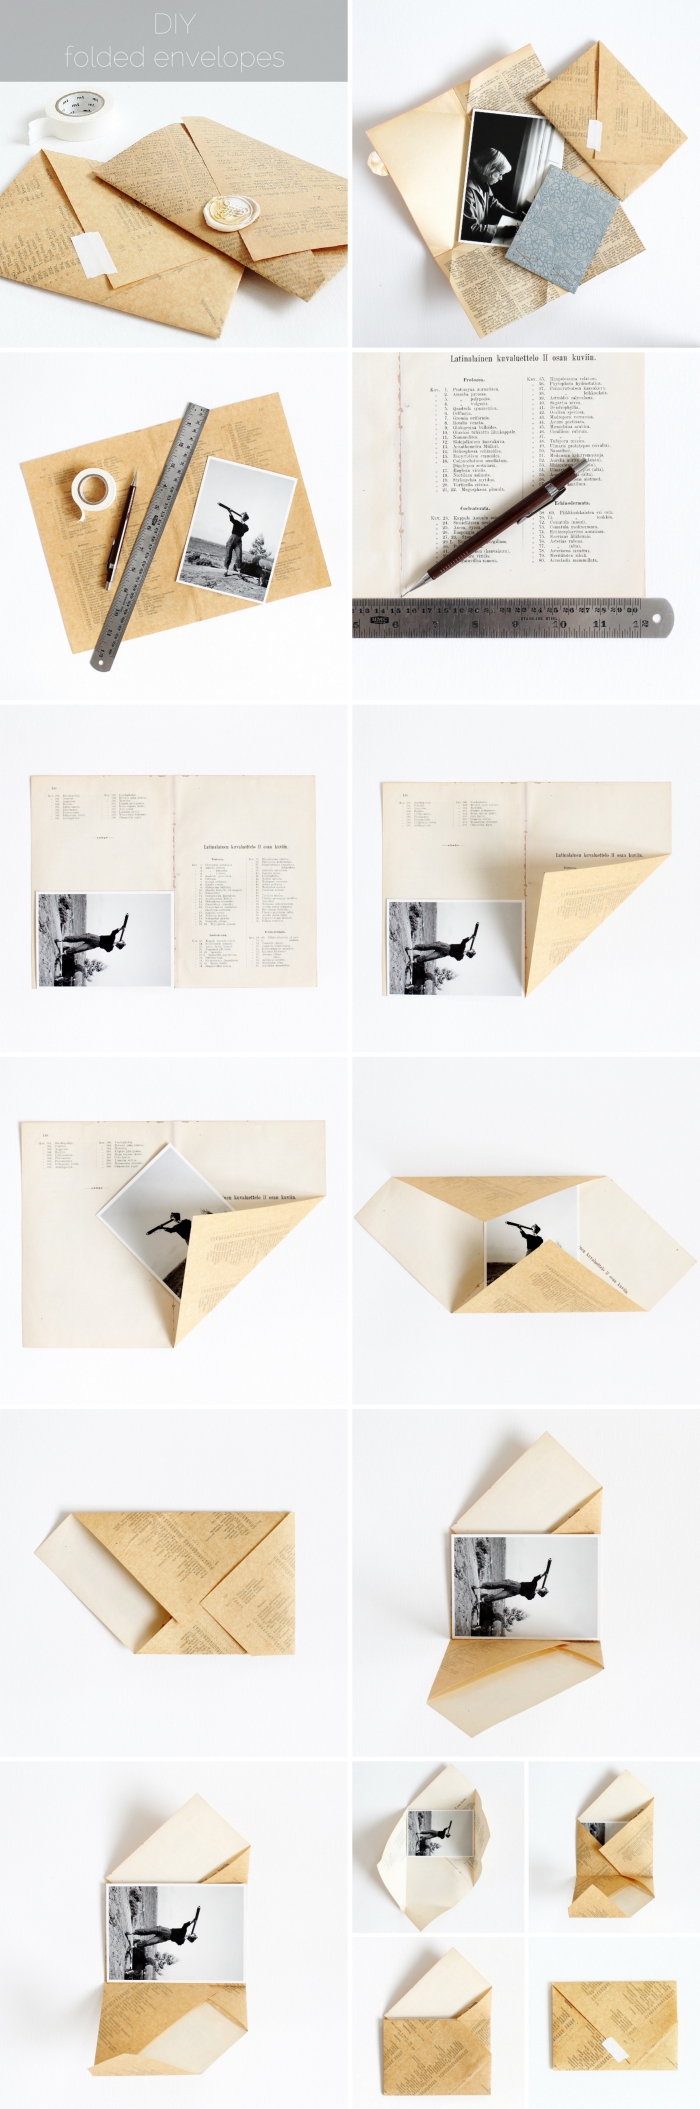 fabriquer une enveloppe, étapes à suivre pour envelopper une photo ou carte postale en papier page de journal